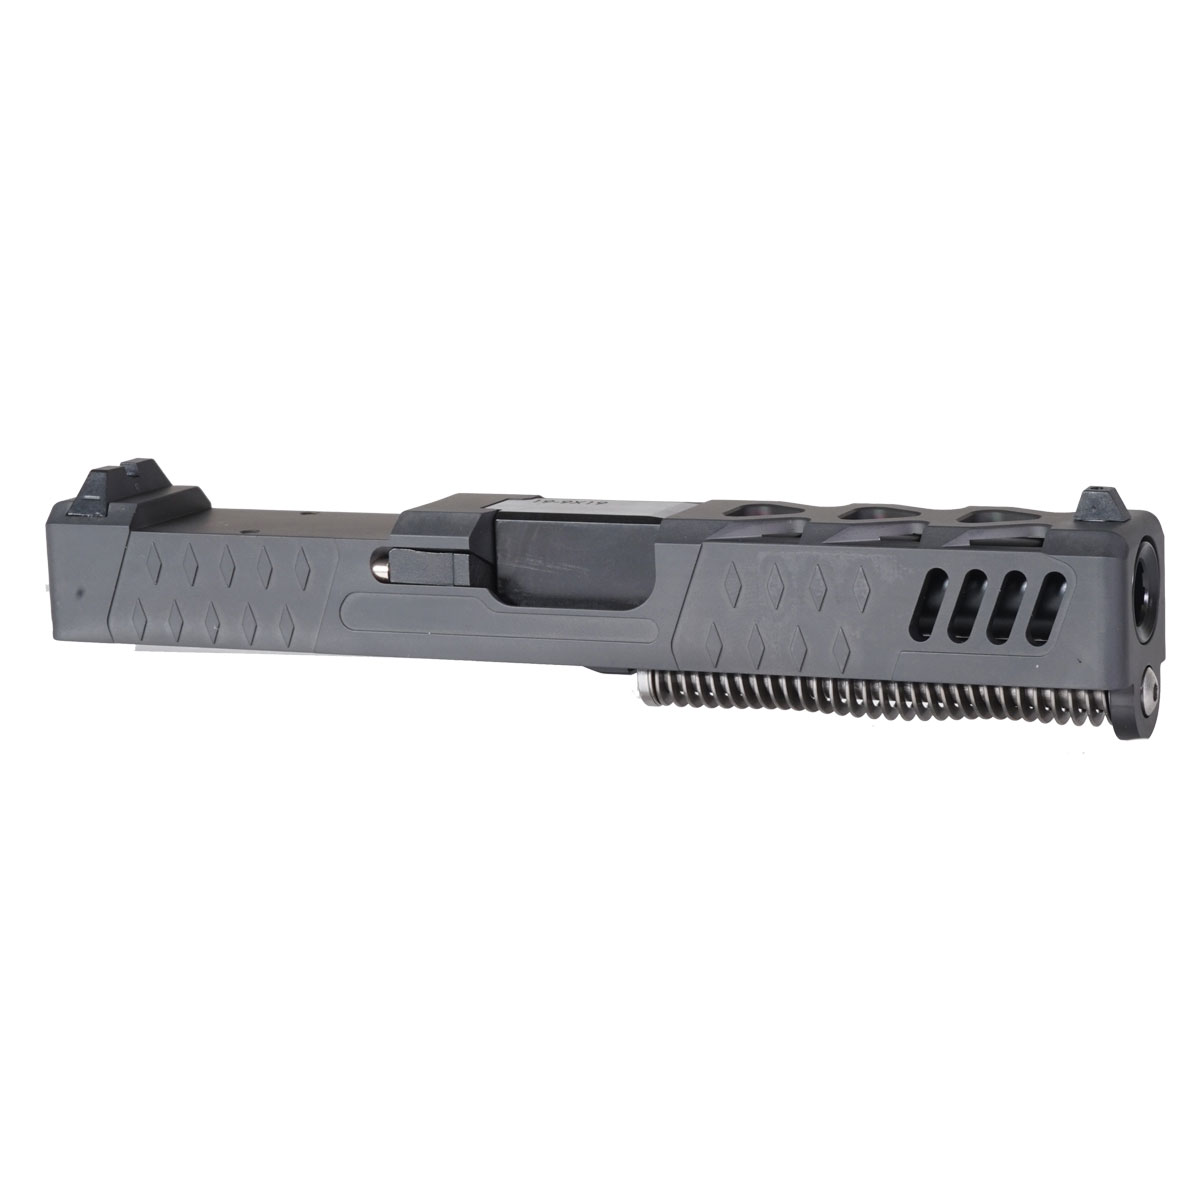 DTT 'The Sarah' 9mm Complete Slide Kit - Glock 19 Gen 1-3 Compatible